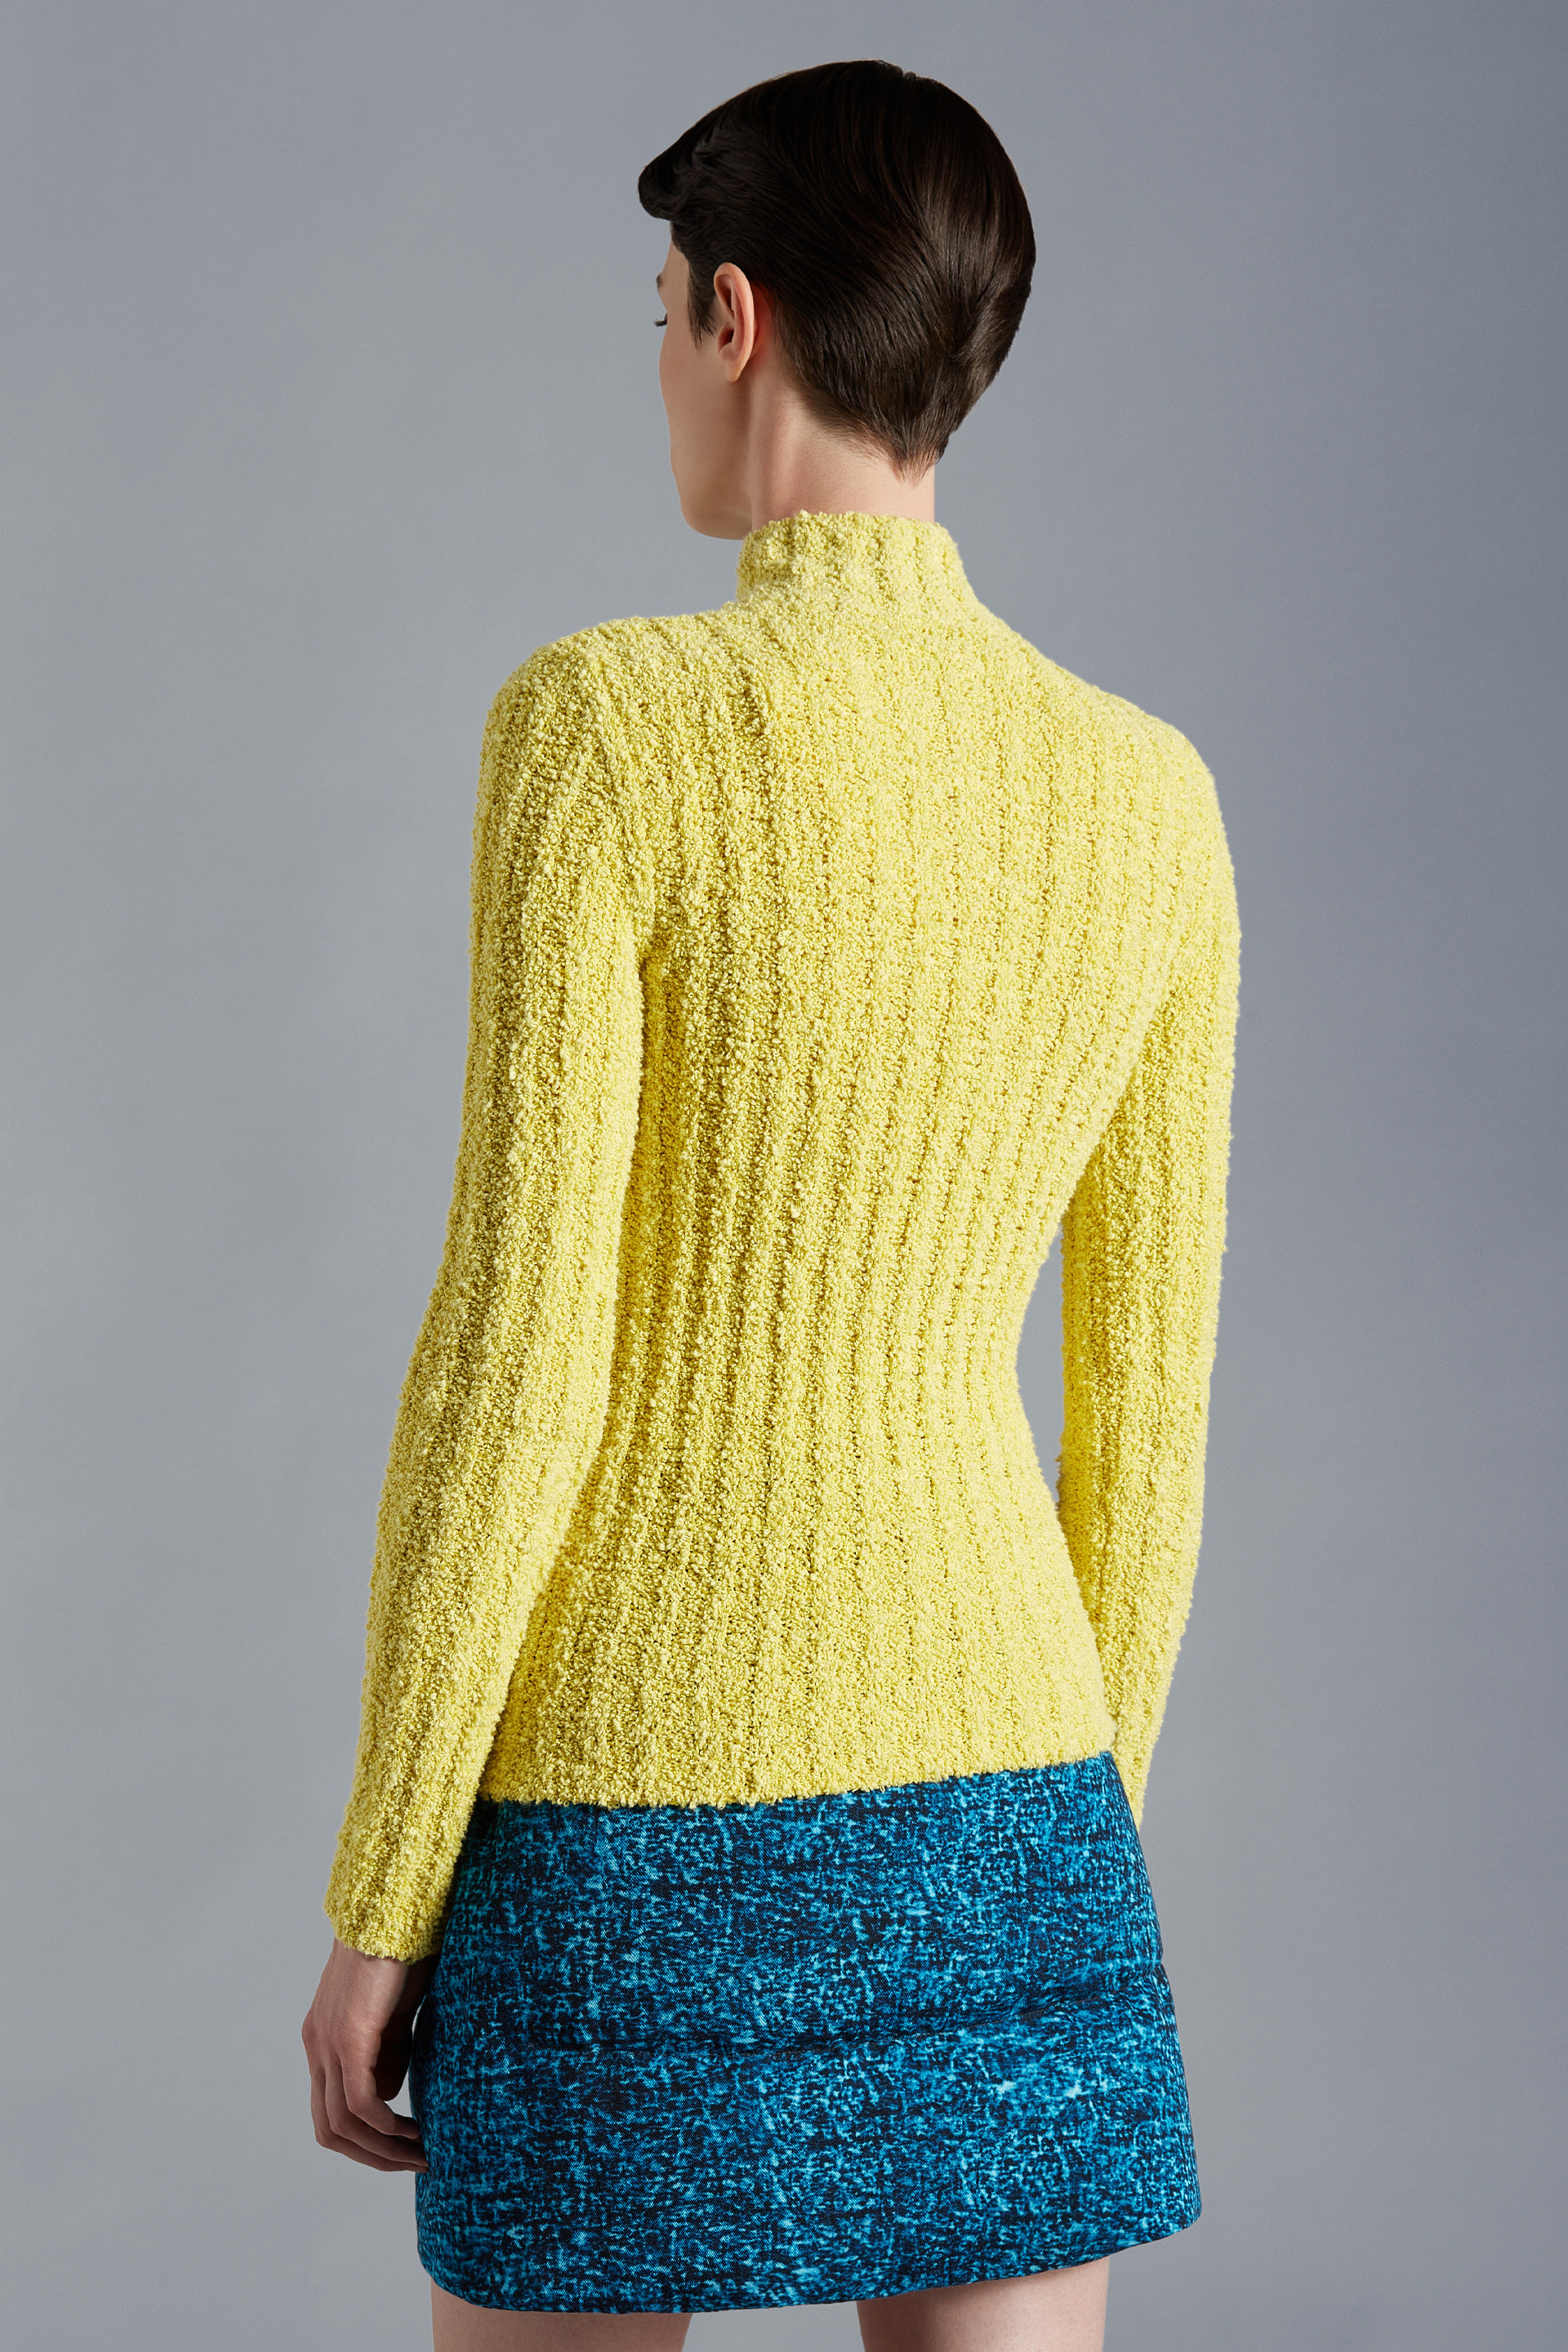 Moncler Genius Baumwolle Rollkragenpullover in Gelb Damen Bekleidung Pullover und Strickwaren Rollkragenpullover 